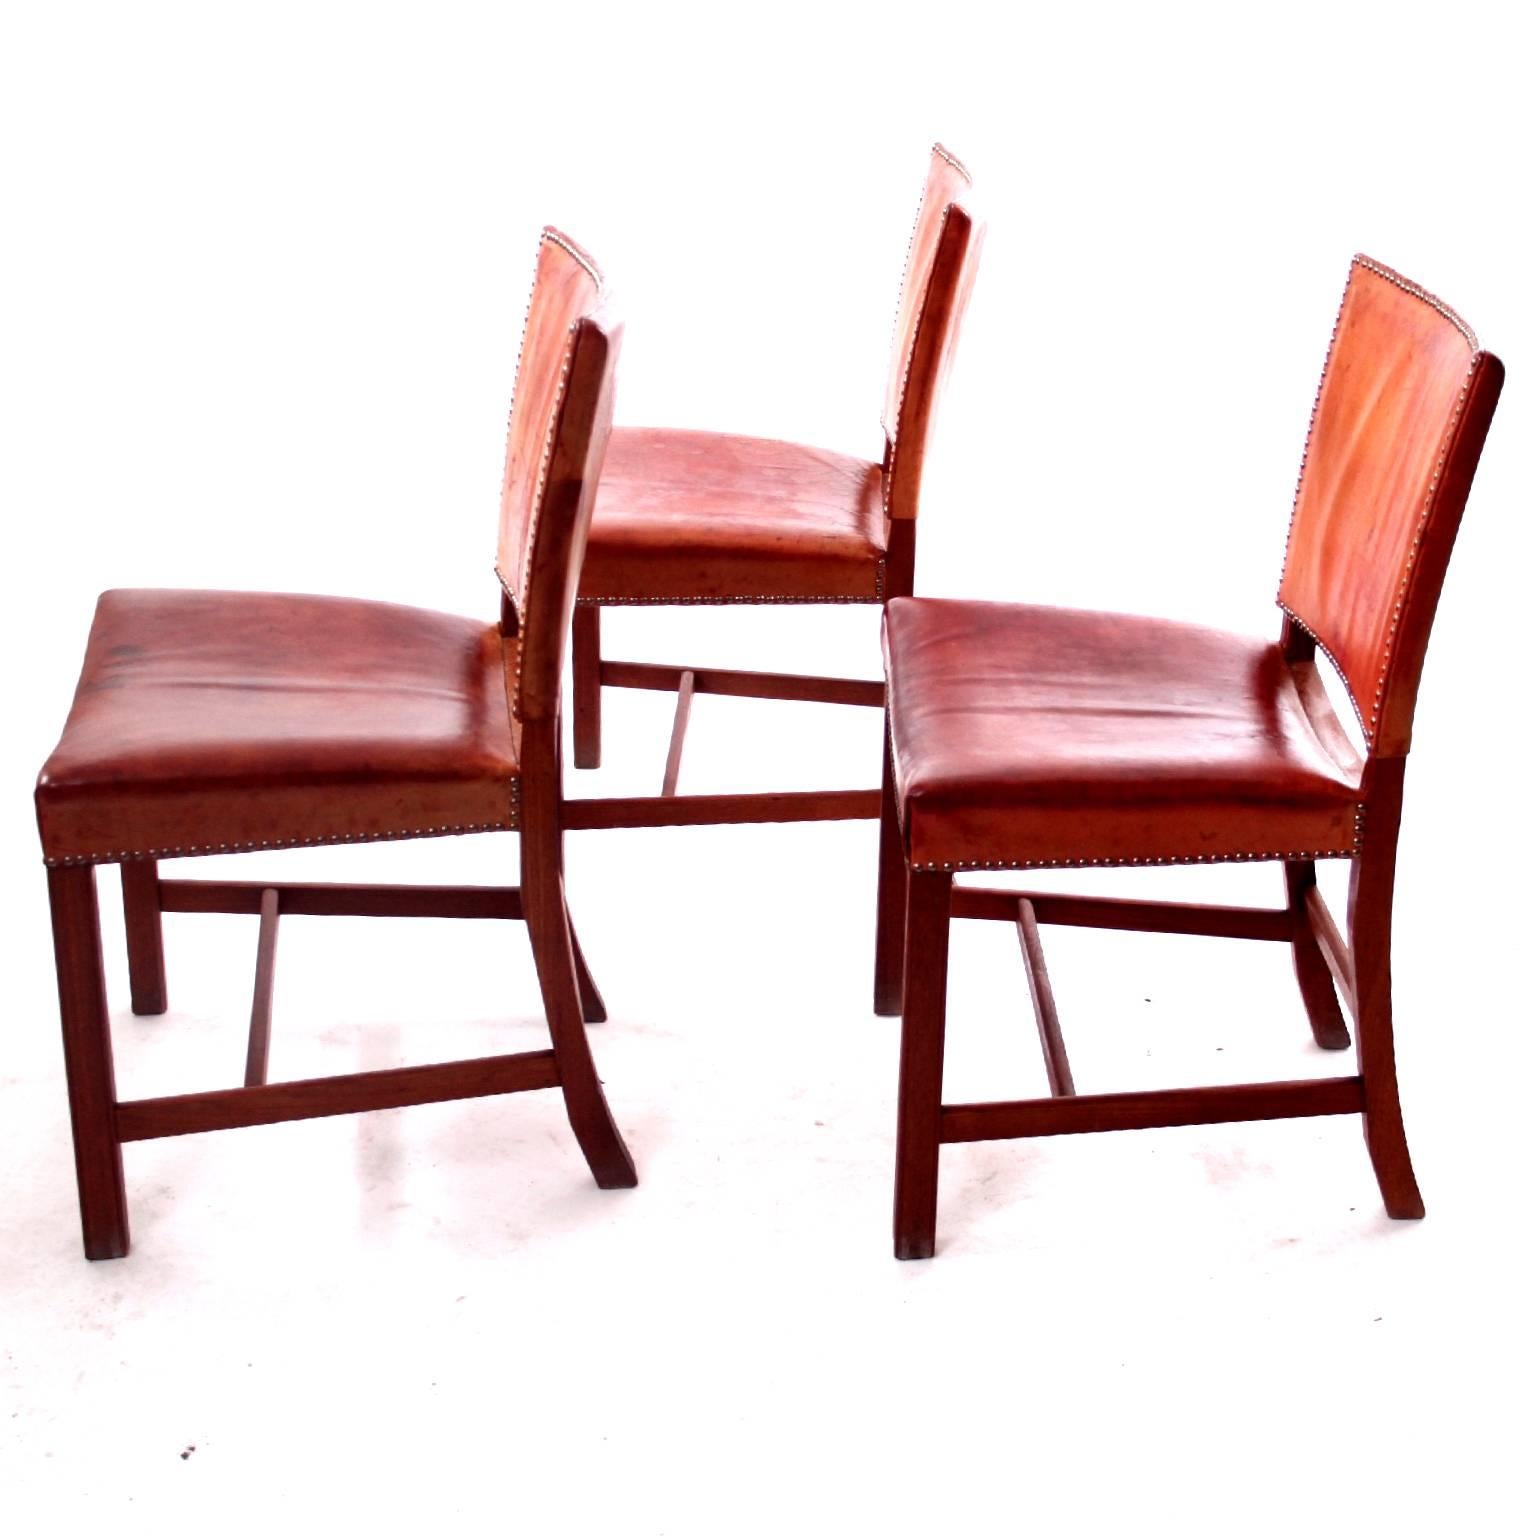 20th Century Kaare Klint Red Chairs Scandinavian Modern